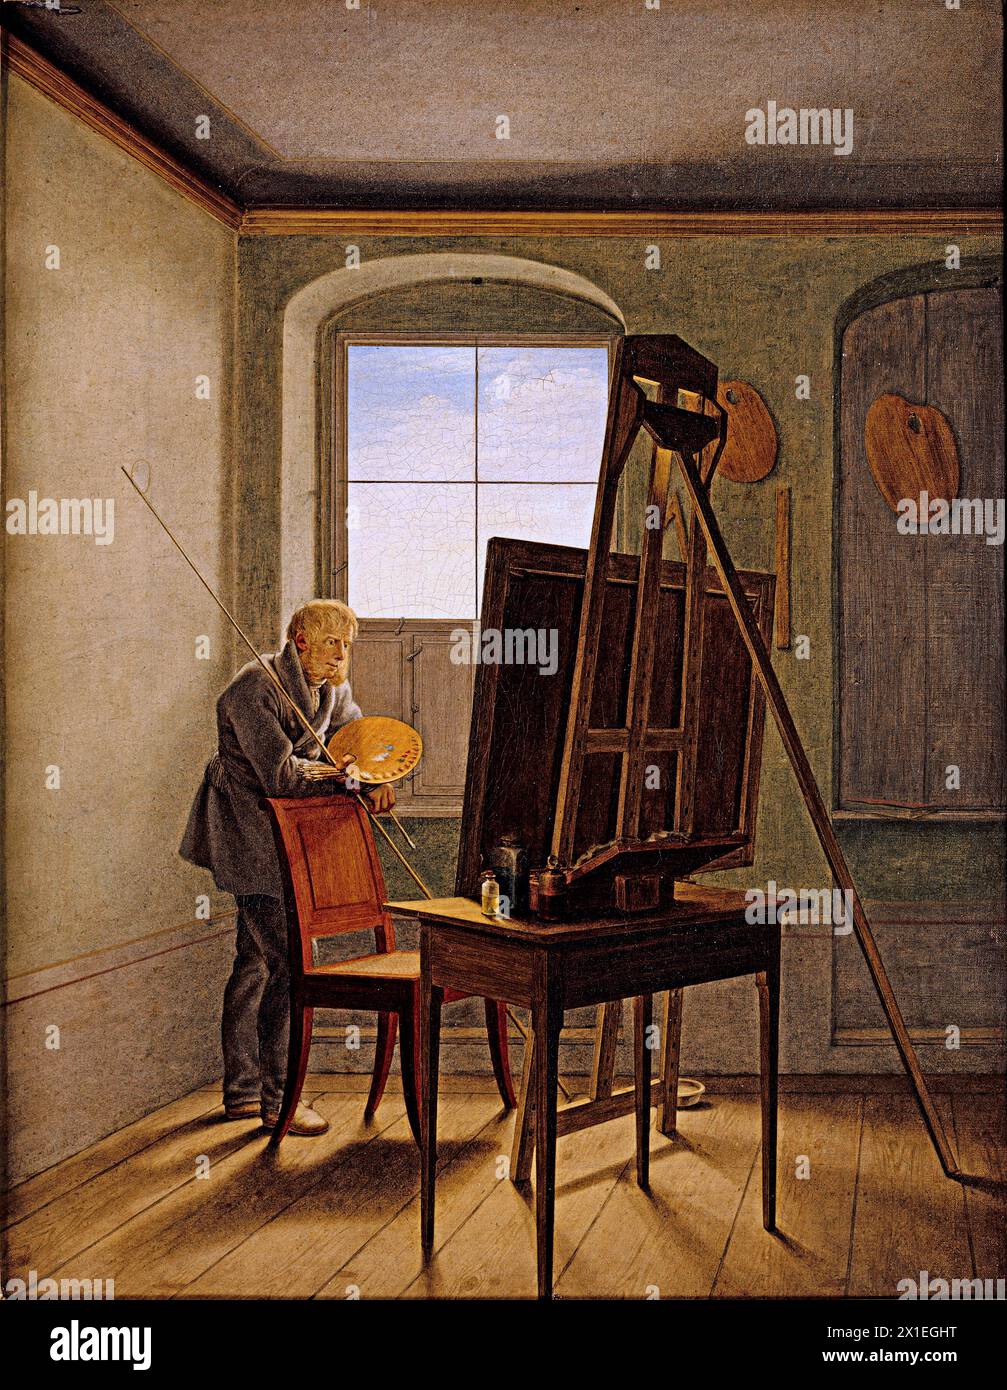 Caspar David Friedrich nel suo Studio si riferisce a due dipinti dell'artista romantico tedesco Georg Friedrich Kersting datati 1811 e 1819. Foto Stock